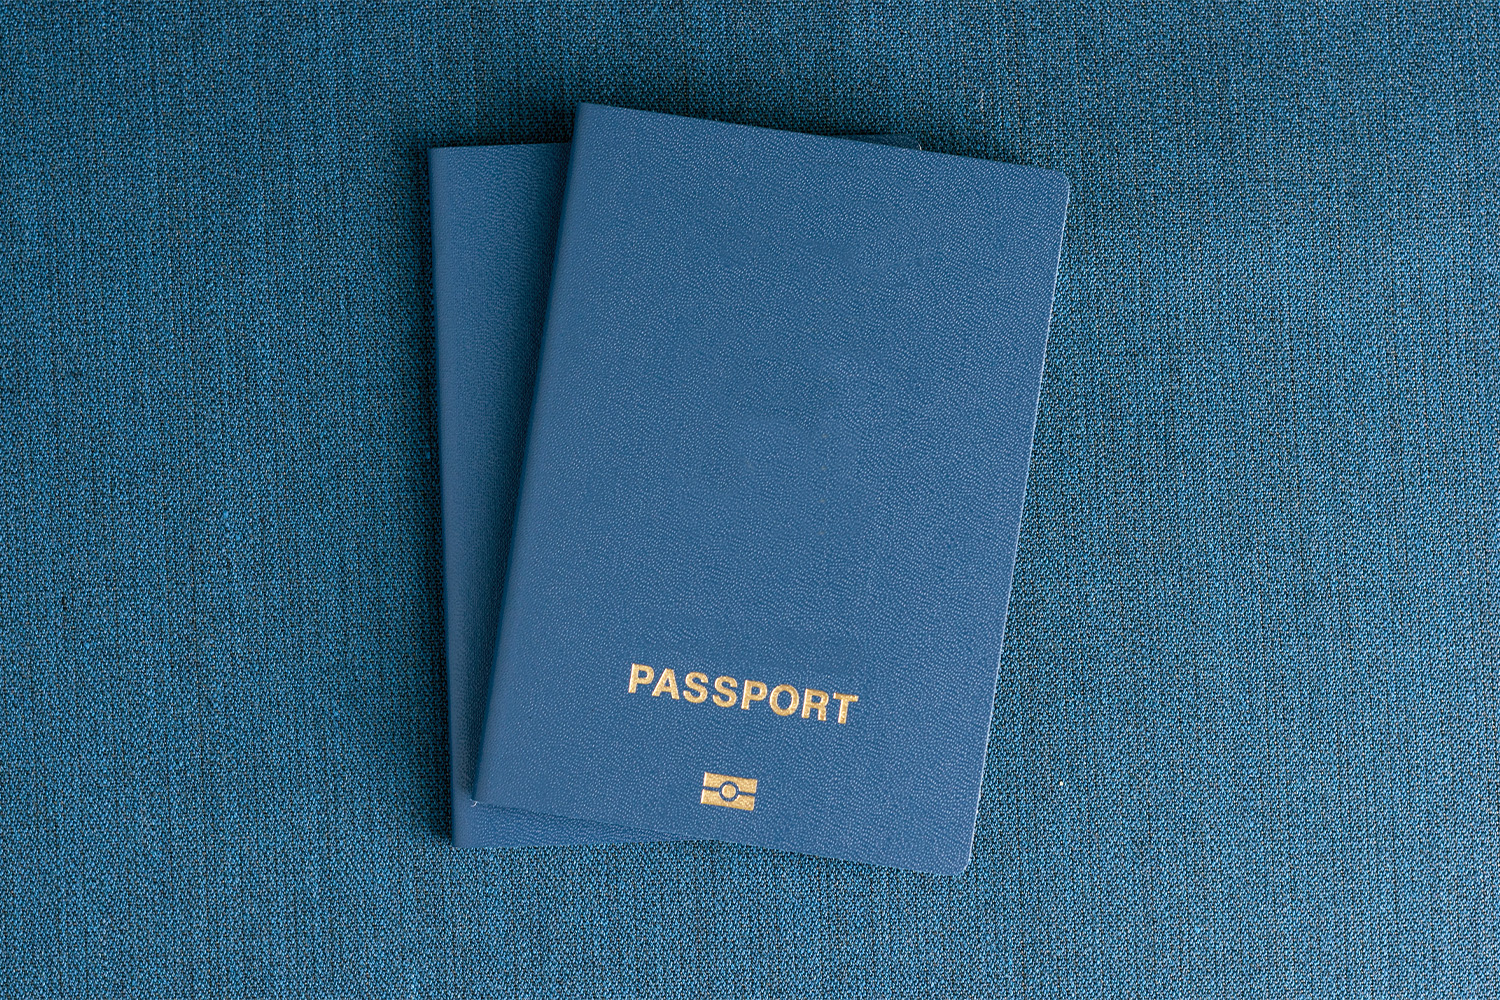 Вам потрібен тимчасовий паспорт? Як і коли отримати його швидко